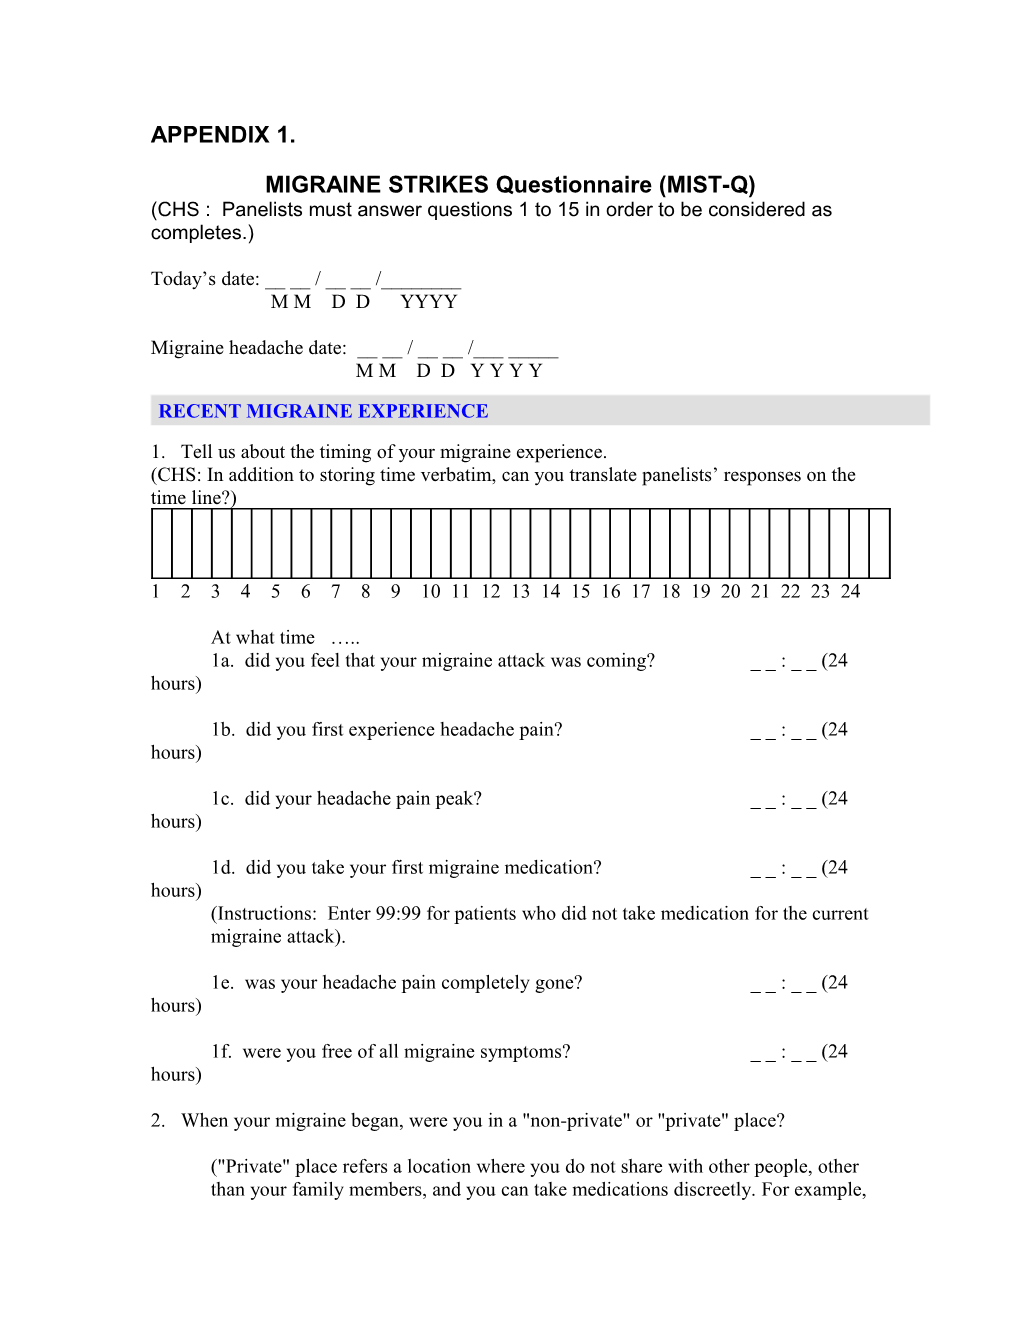 MIGRAINE STRIKES Questionnaire (MIST-Q)